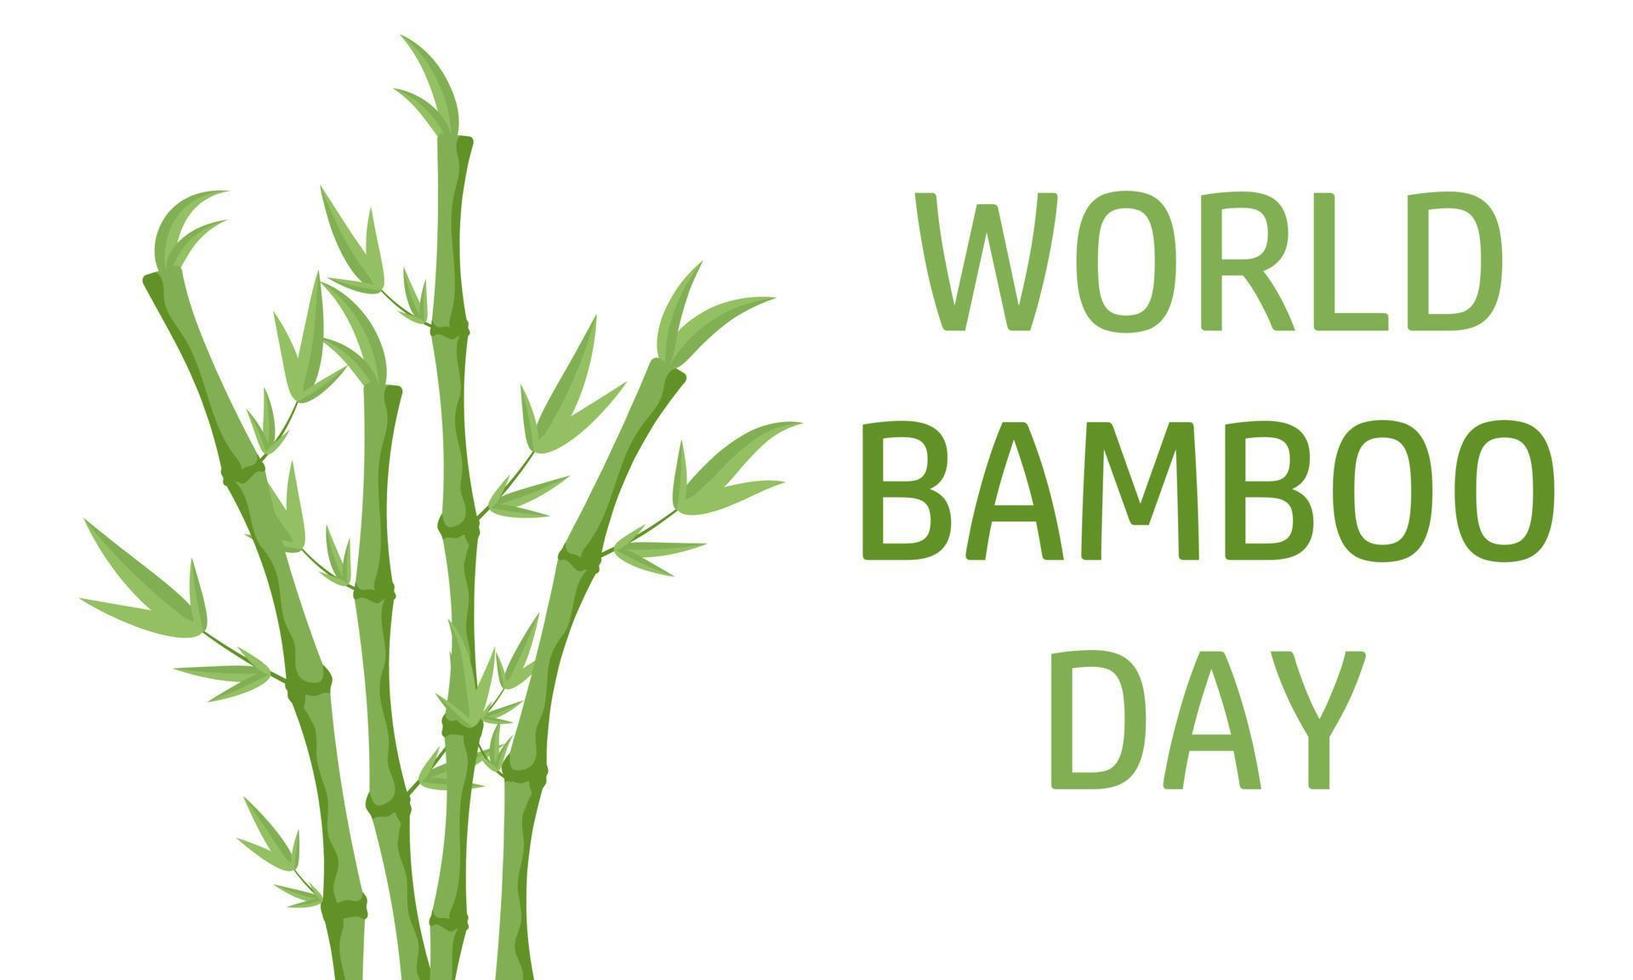 World bamboo day september 18. Vector illustration.